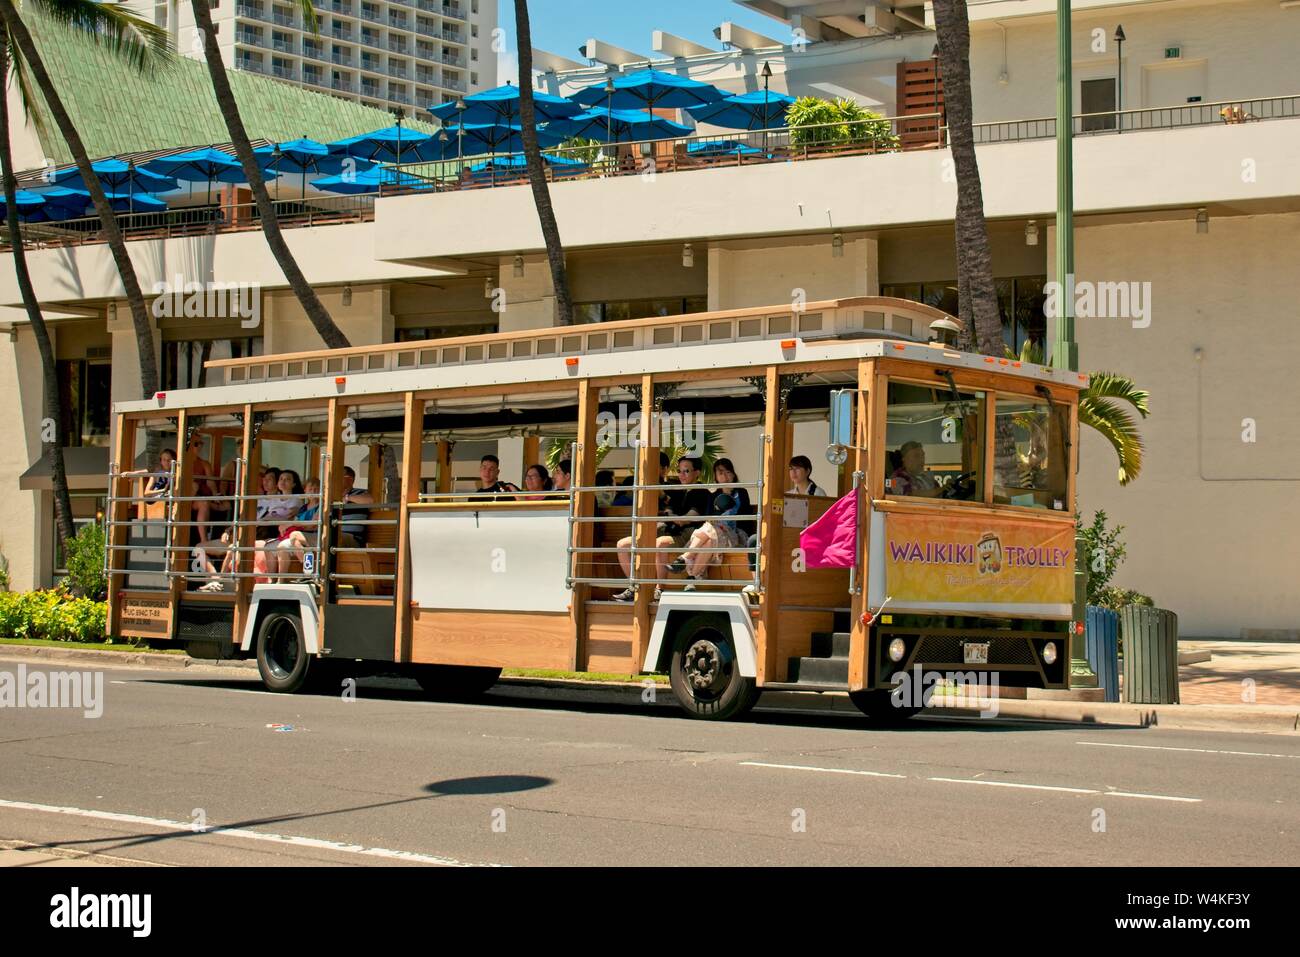 Waikiki Trolley, populaires pour les touristes transport Banque D'Images